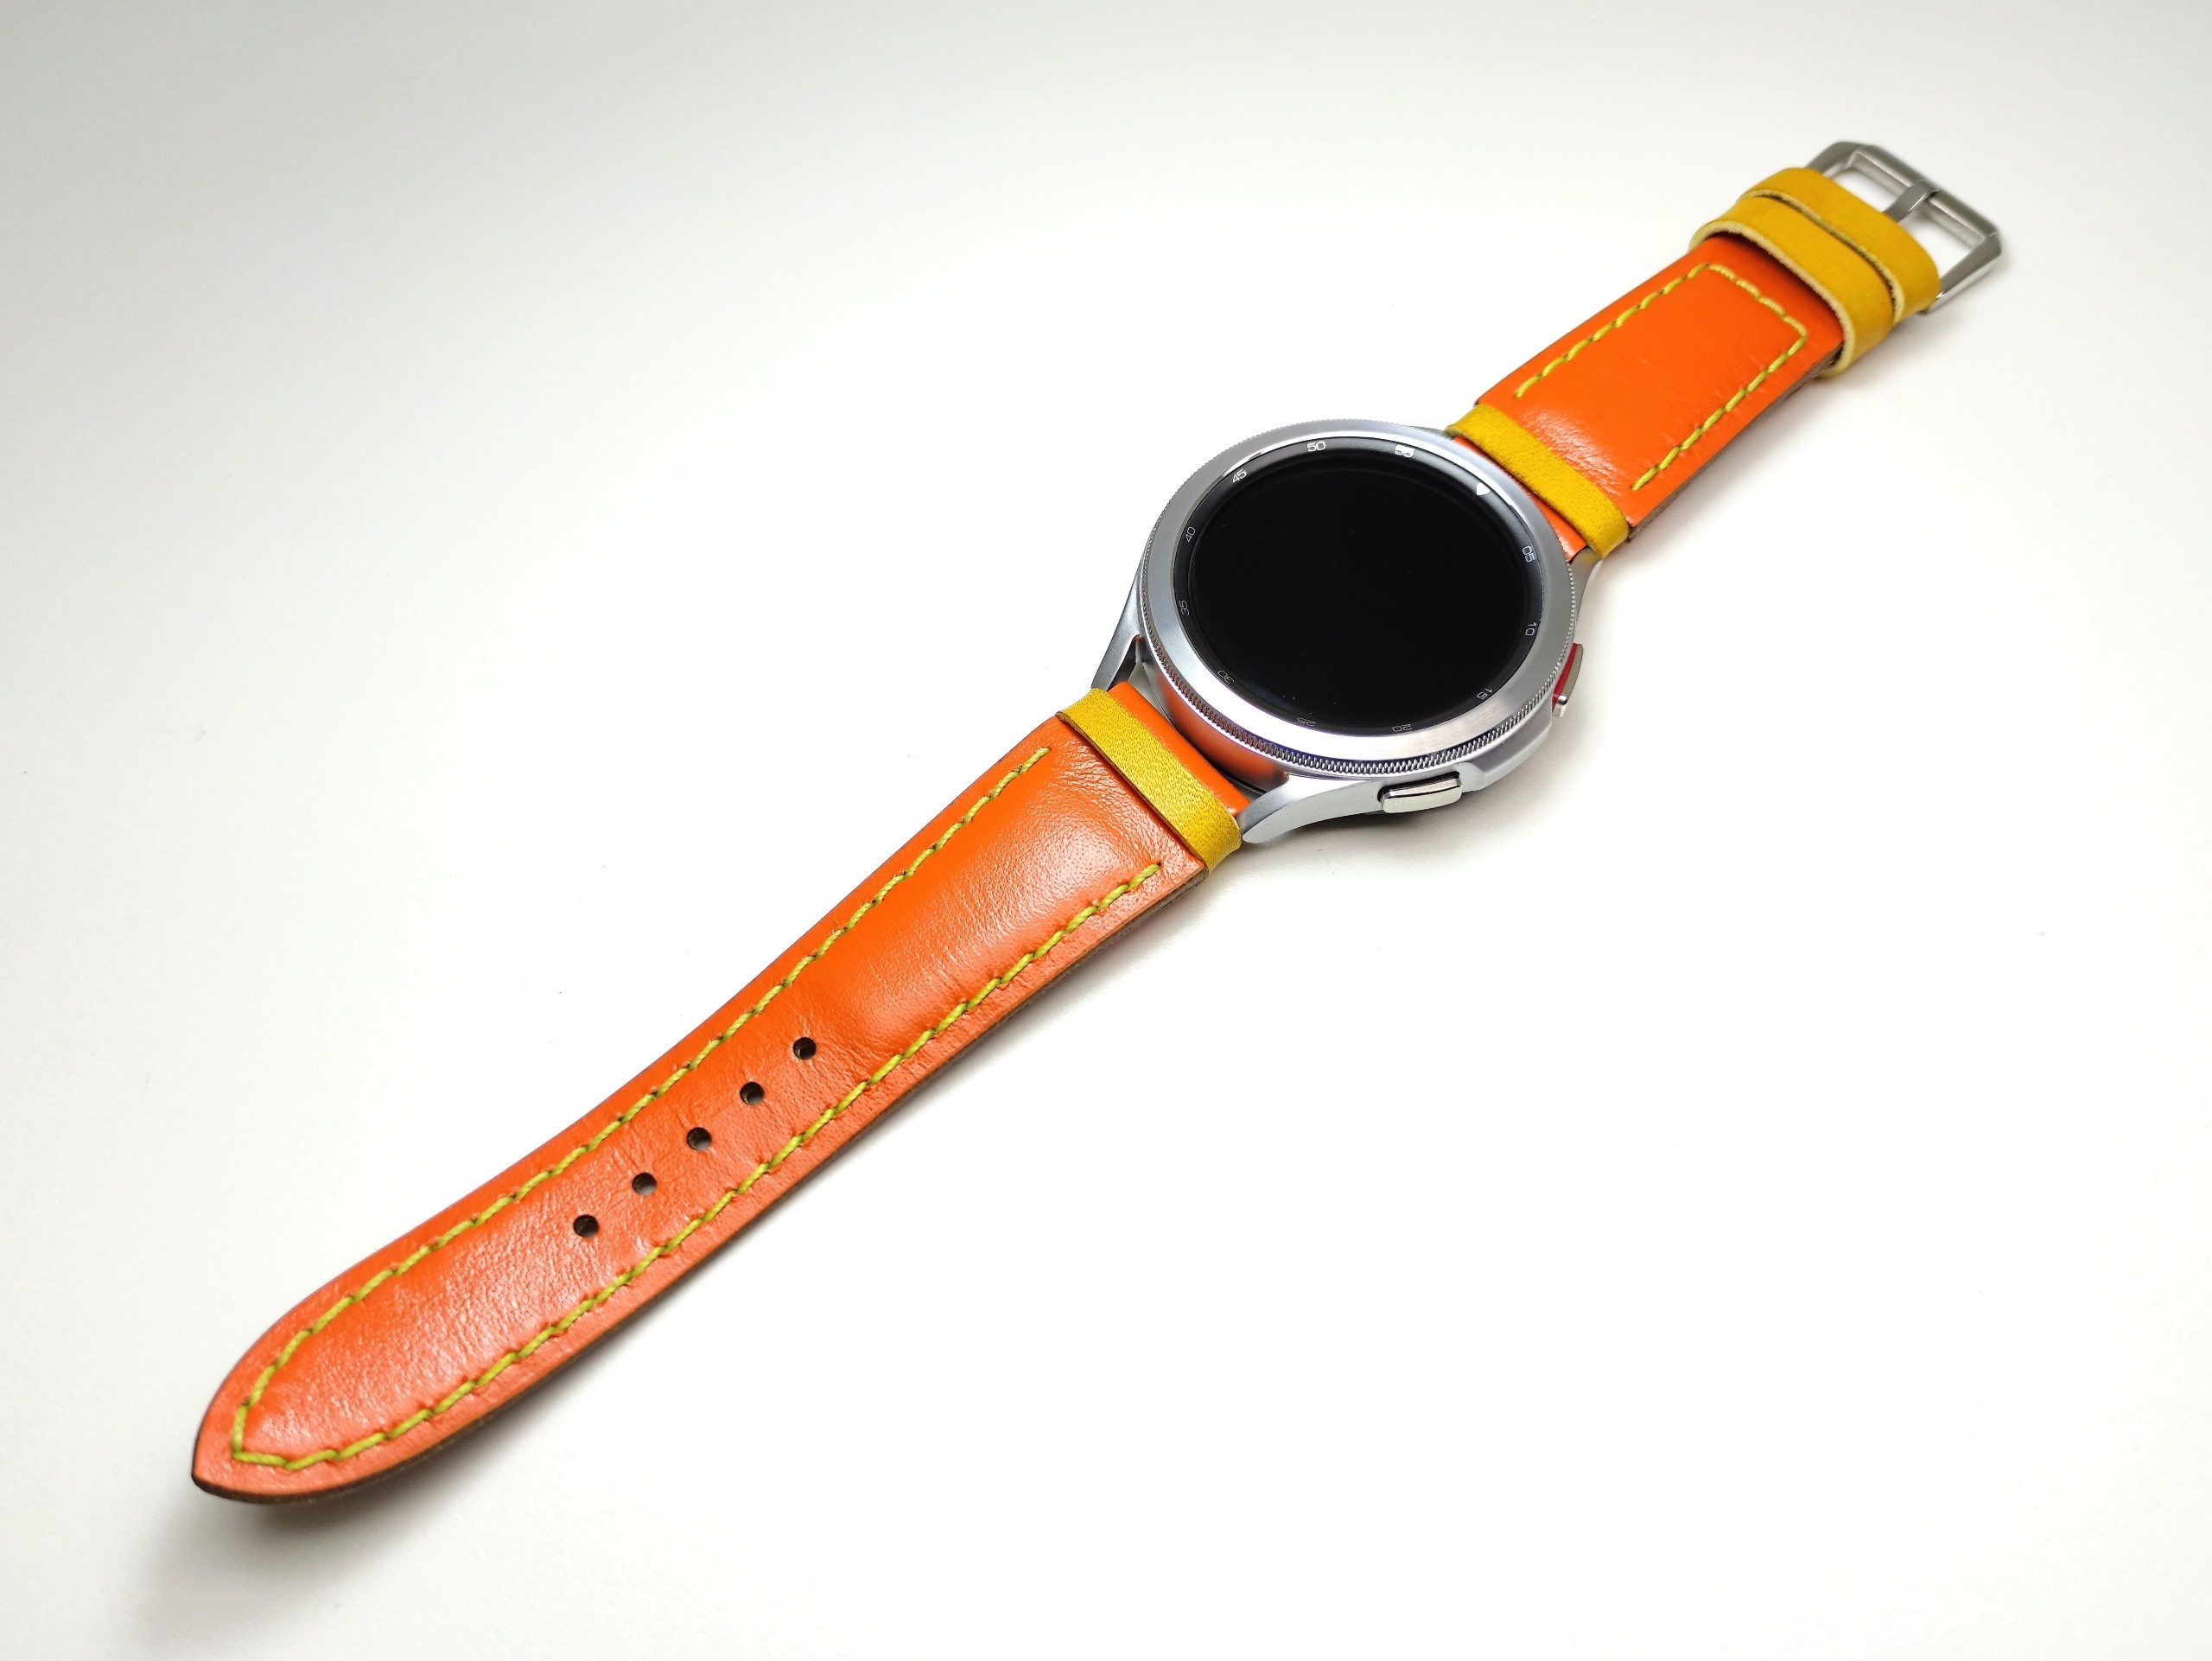 H0877b02-15or ремешок оранжевый. Текстильный ремешок для часов. Часы с оранжевым ремешком. Смарт часы с оранжевым ремешком.